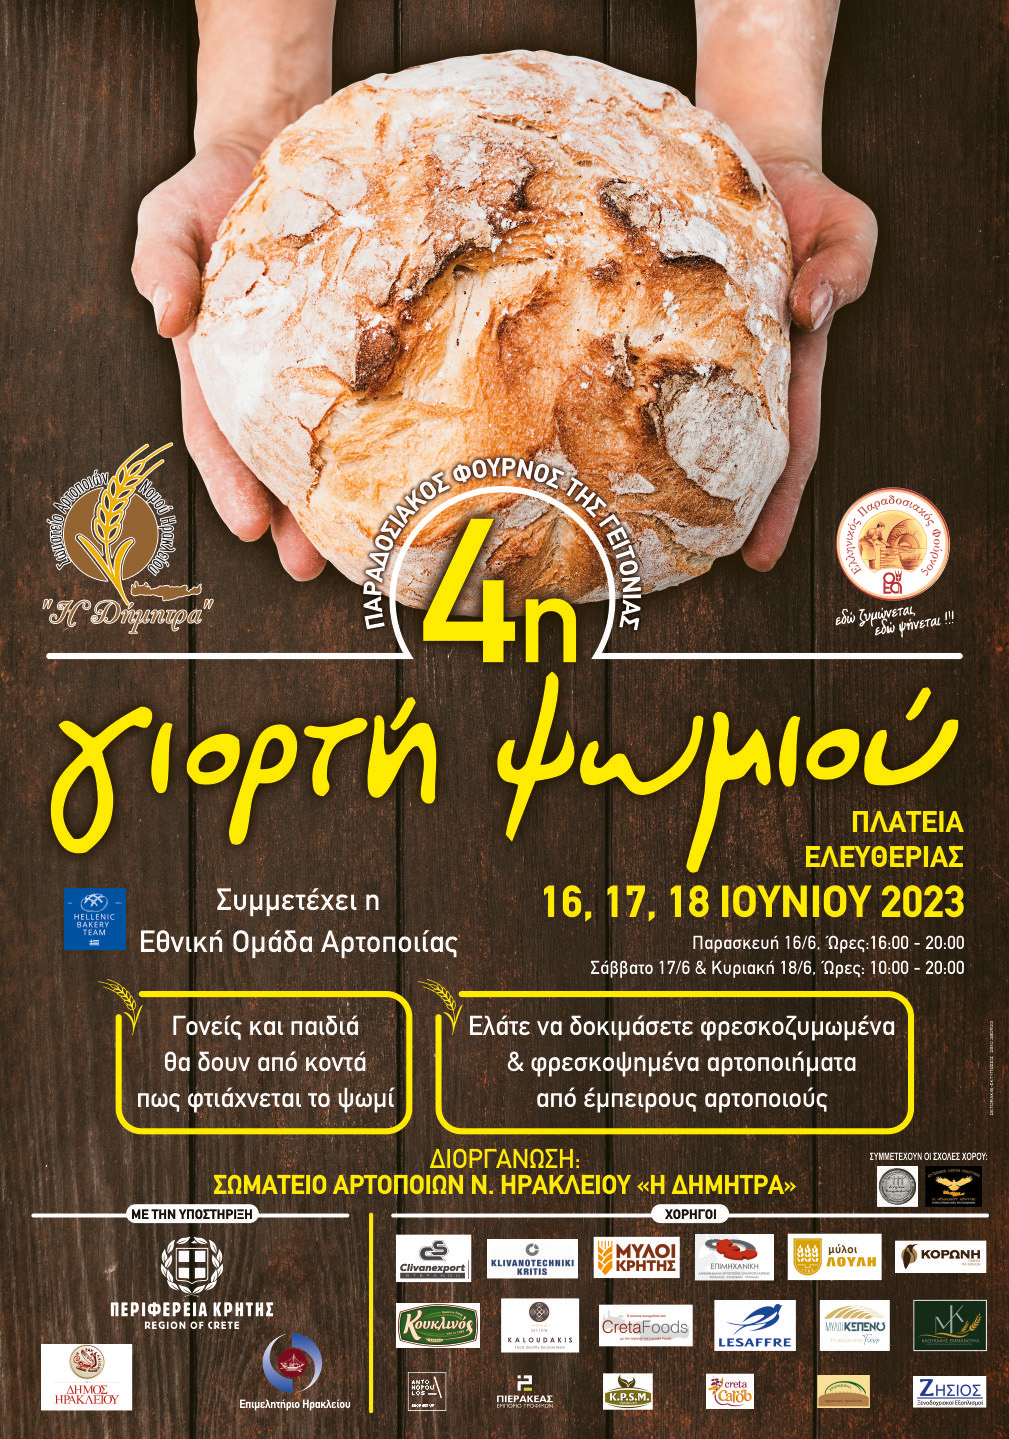 Ξεκινάει την Παρασκευή η 4η γιορτή ψωμιού στο Ηράκλειο